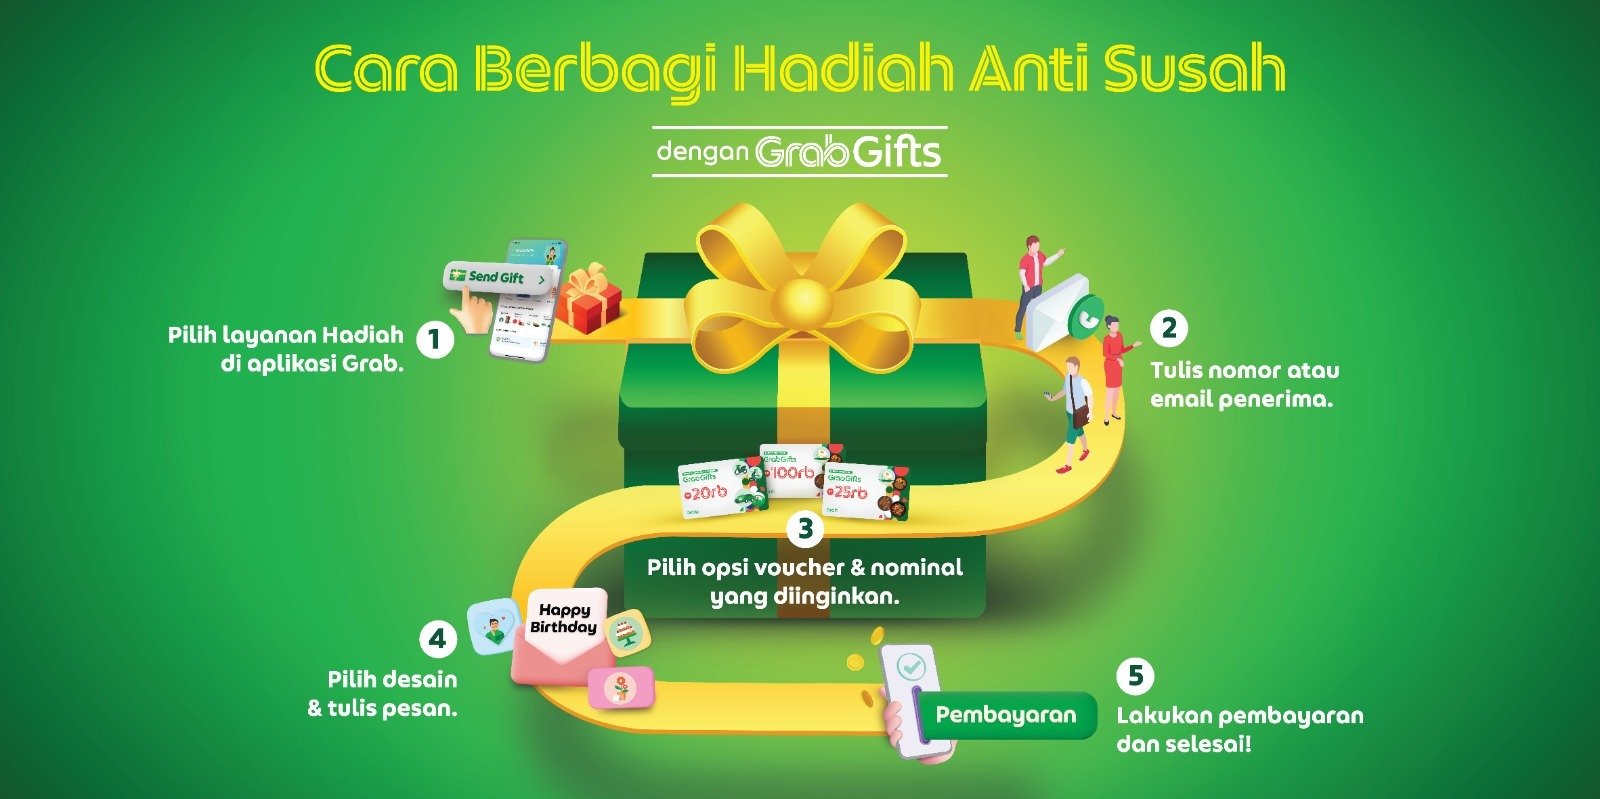 Grab Gift